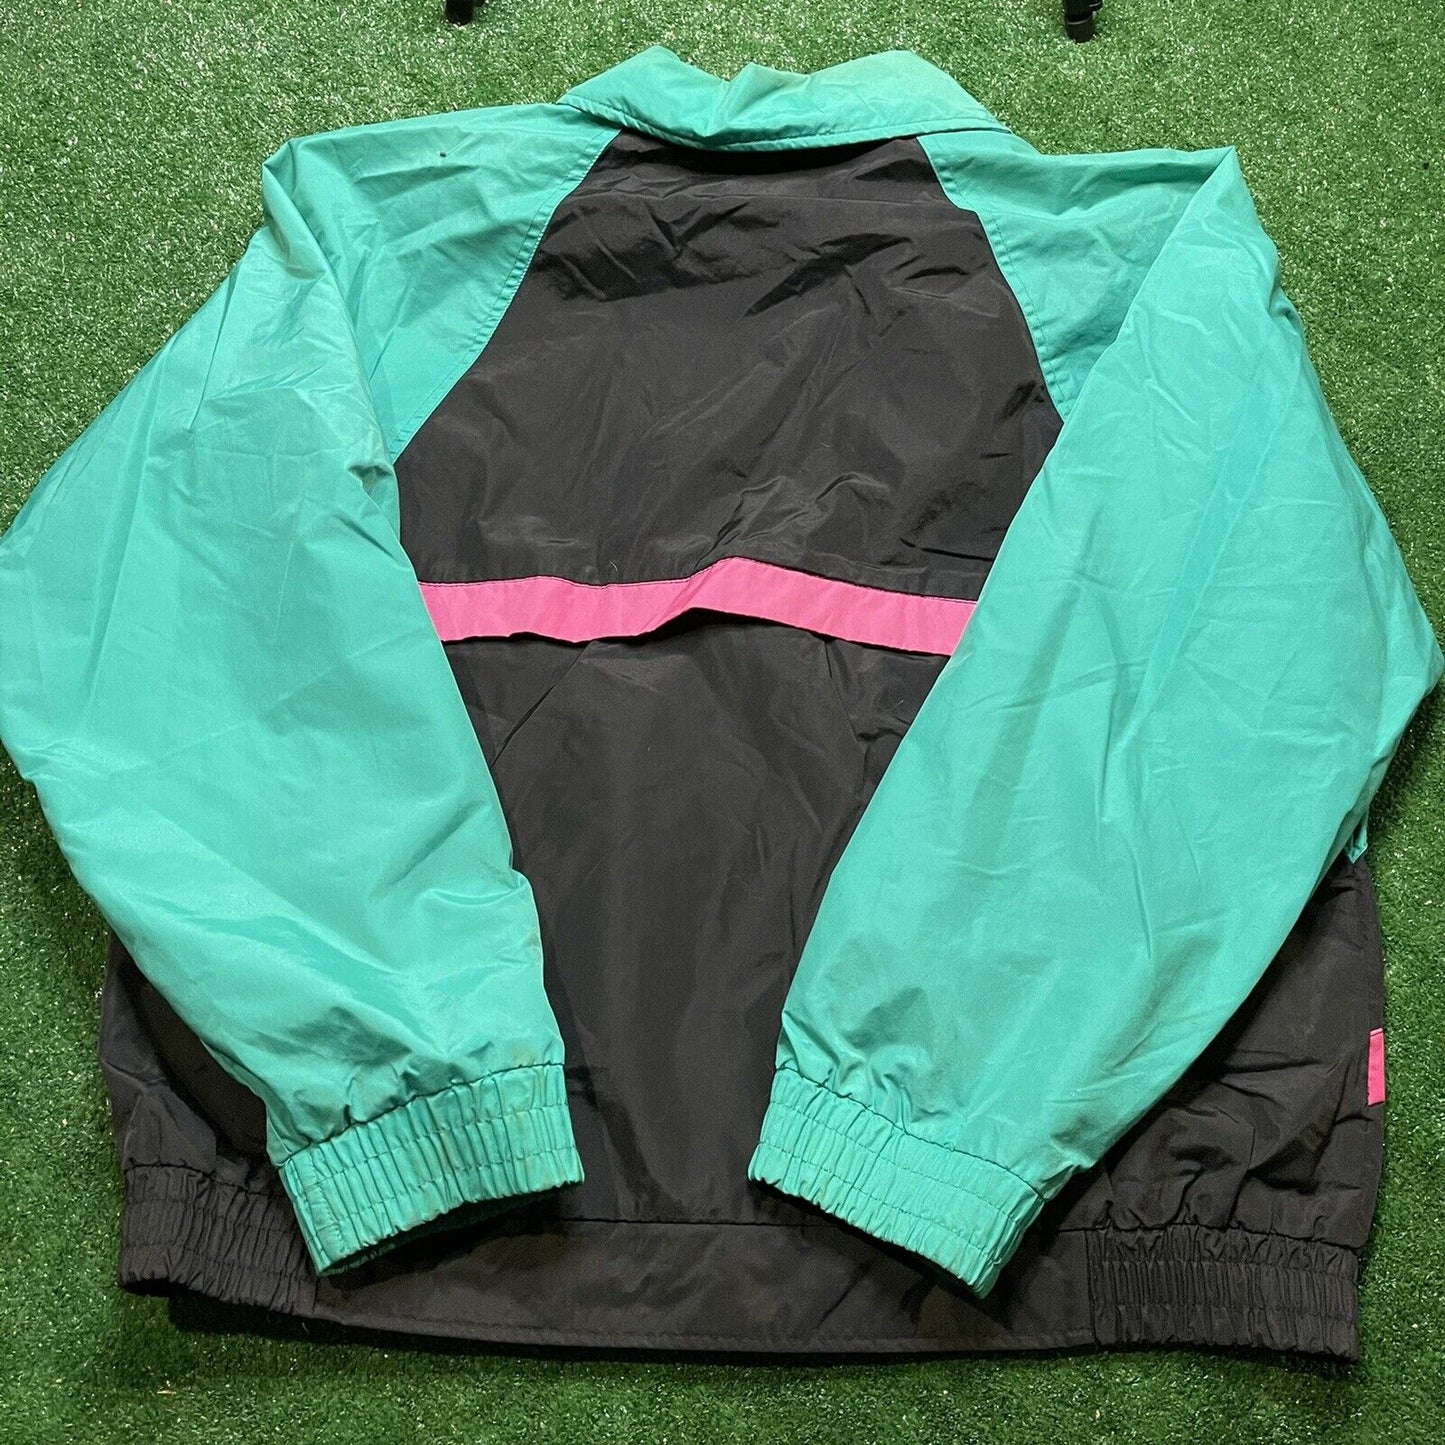 90’s Woolrich Sigmet Gear  Vintage Windbreaker Jacket Colorblock Sz Large